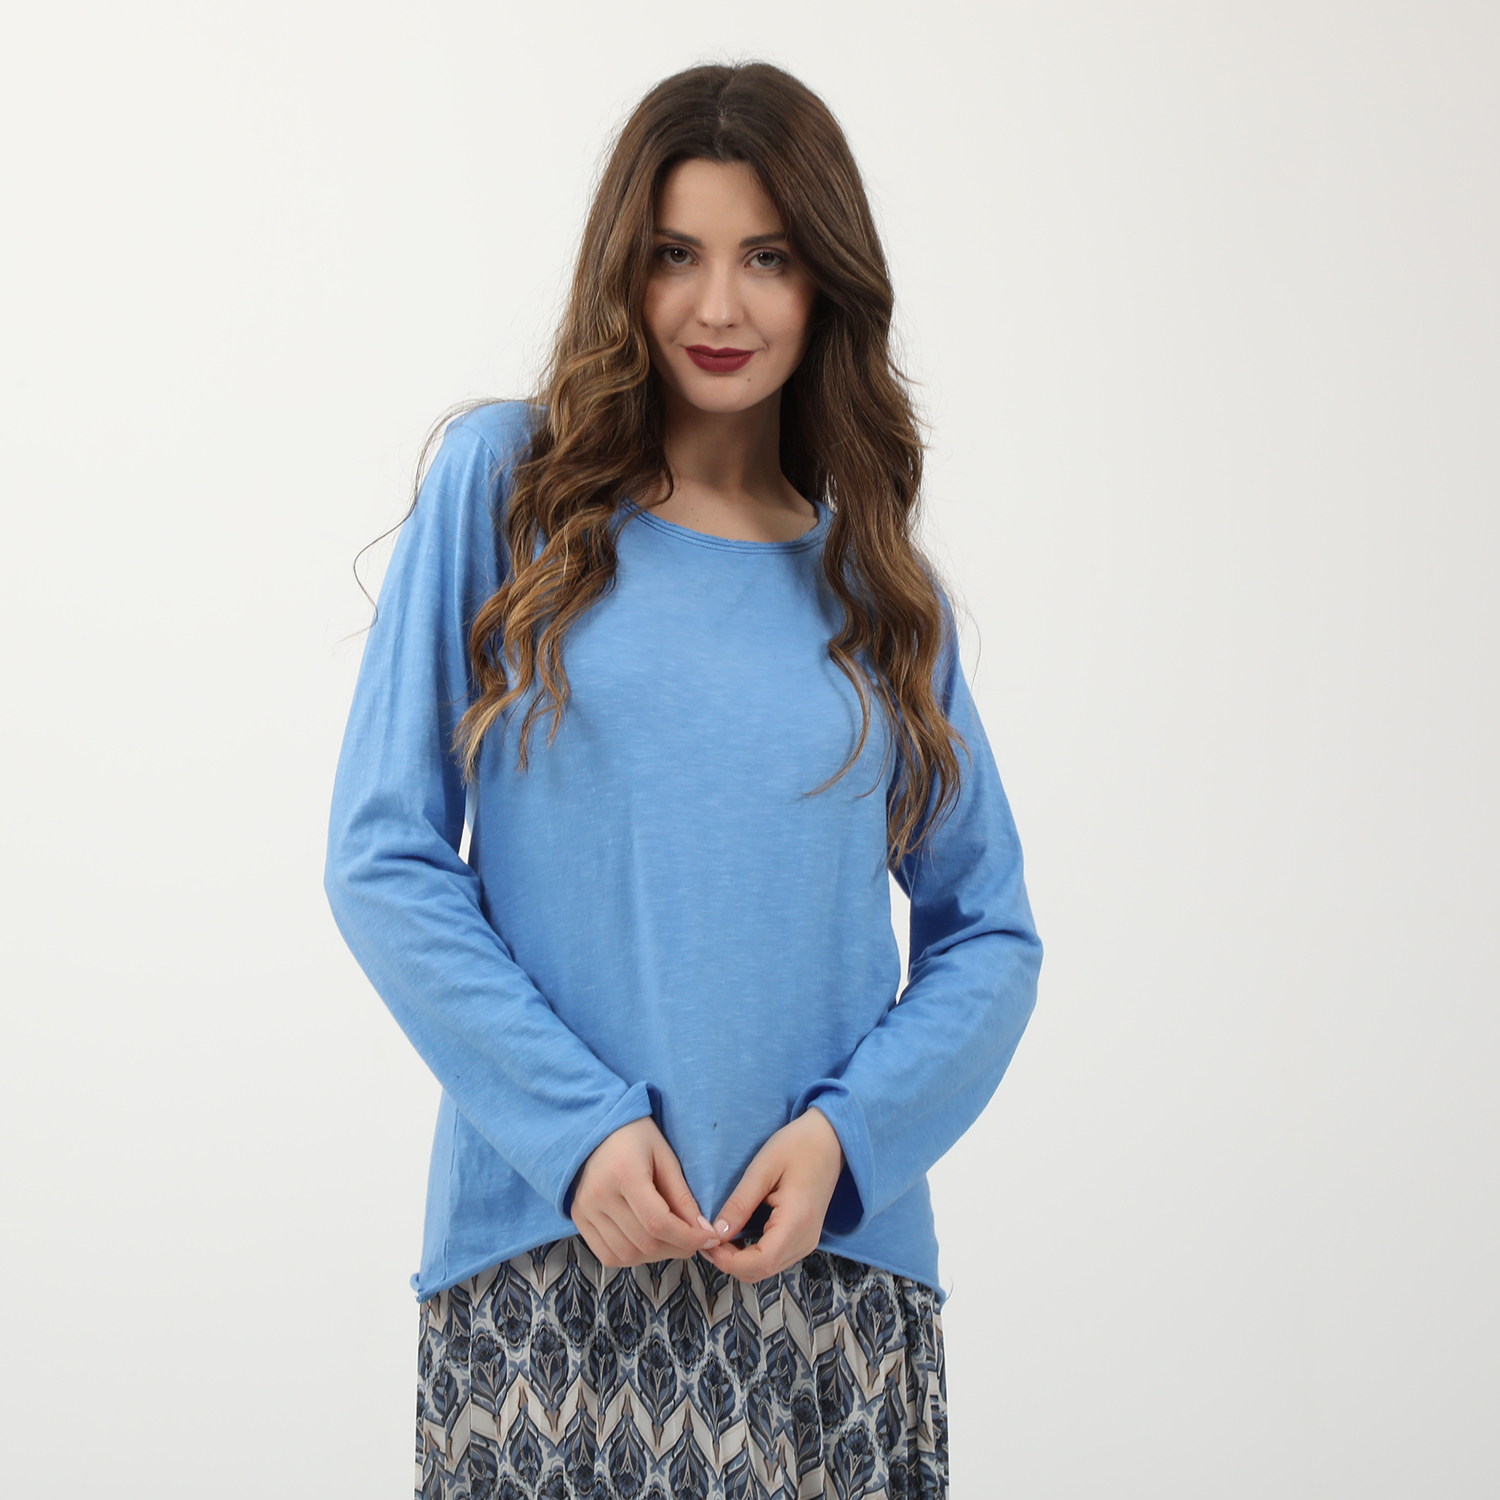 Γυναικεία/Ρούχα/Μπλούζες/Μακρυμάνικες 'ALE - Γυναικεία βαμβακερή μπλούζα 'ALE μπλε